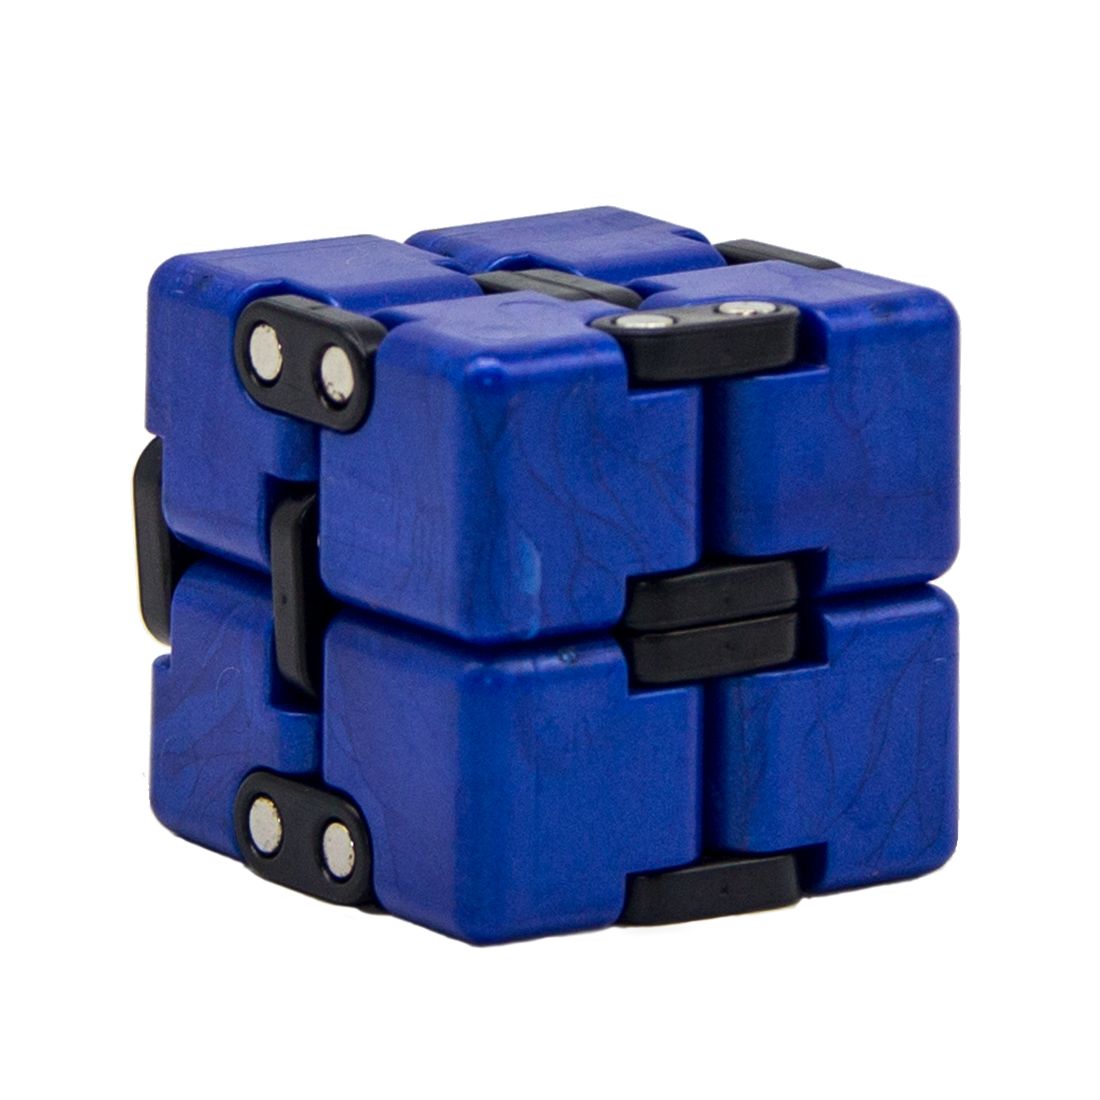 Игра синий кубик. Синий кубик. Синий маленький кубик. Кубик синий на липучке. 3x кубики синие.